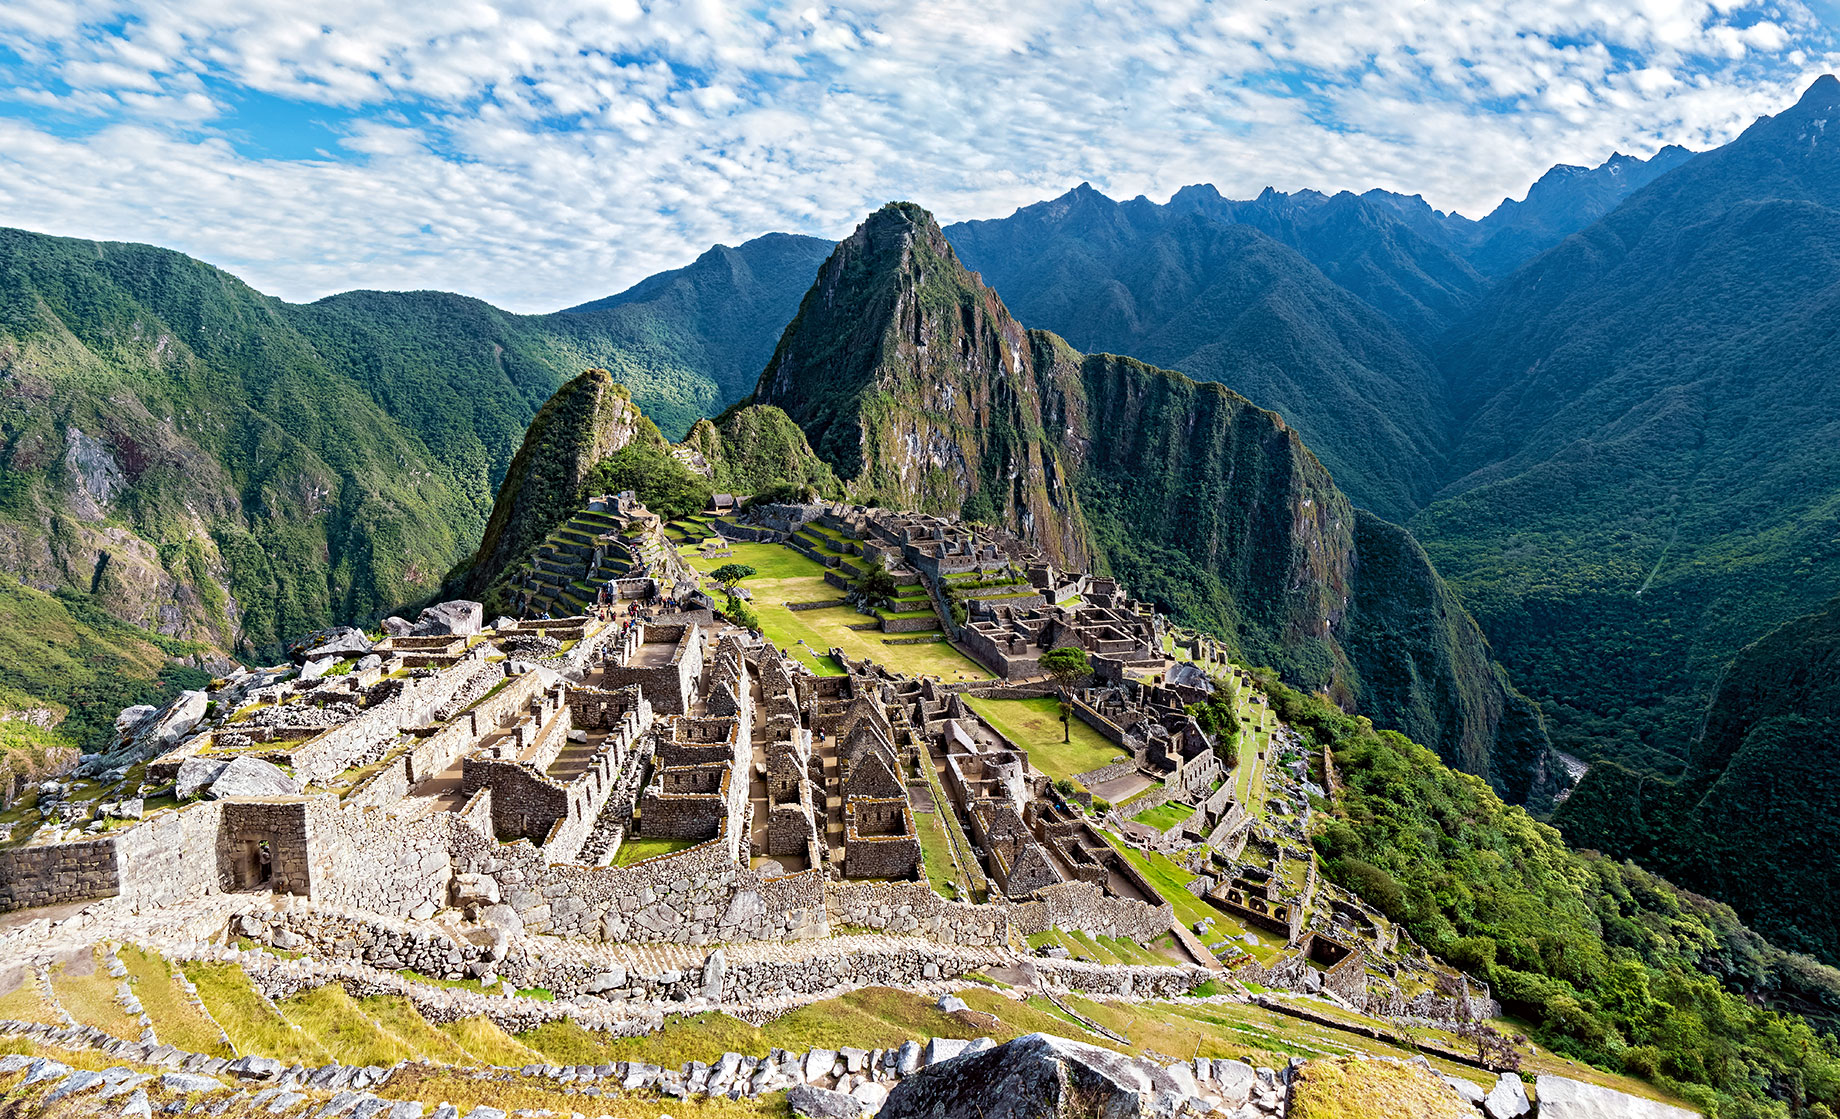 Inca Trail to Machu Picchu, Peru